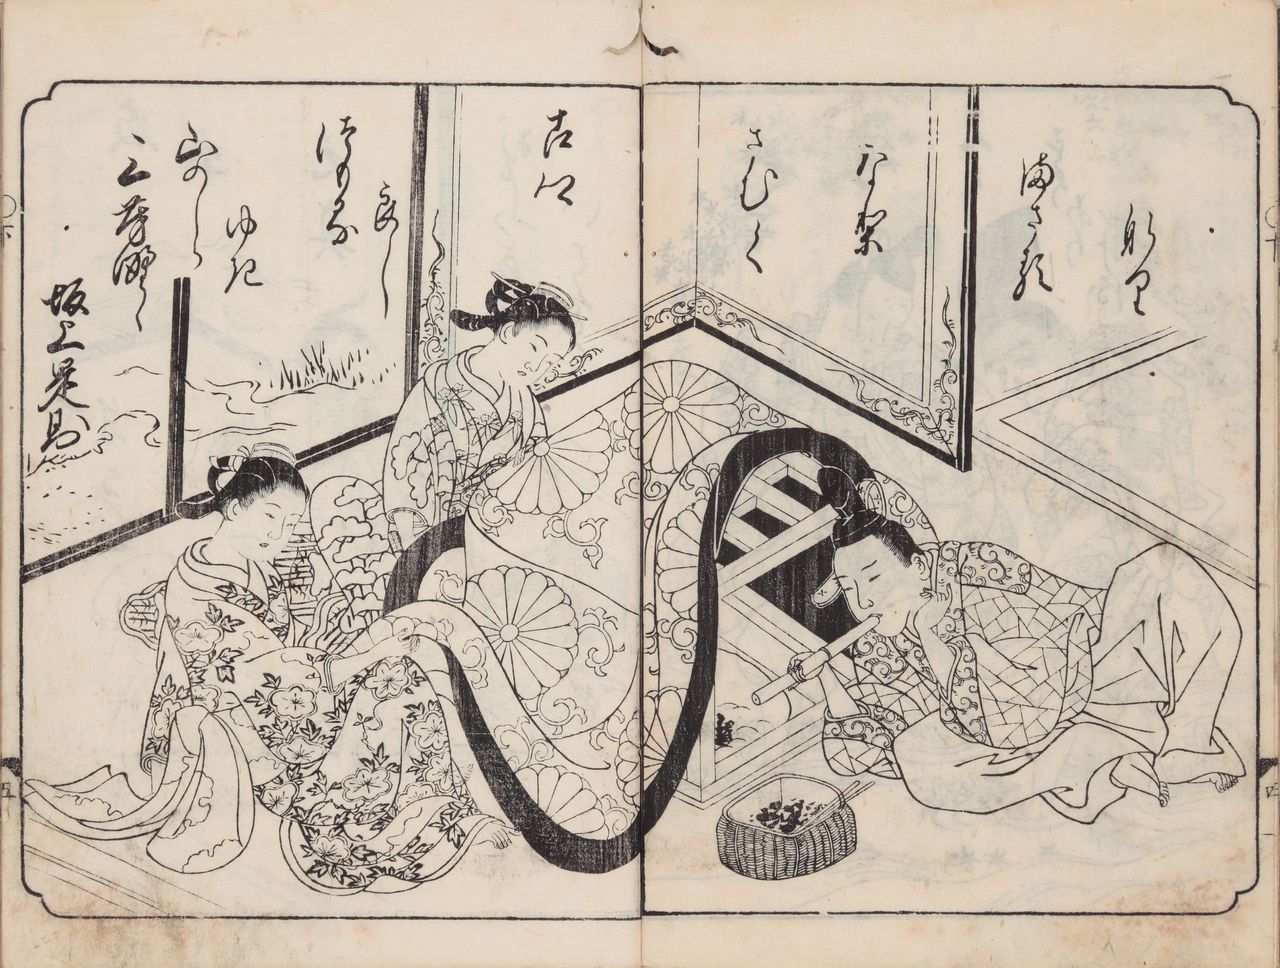 『絵本和歌浦』（1734 / 享保19年刊）に、炬燵に入れる炭に火を起こす家族の姿がある。国文学研究資料館所蔵